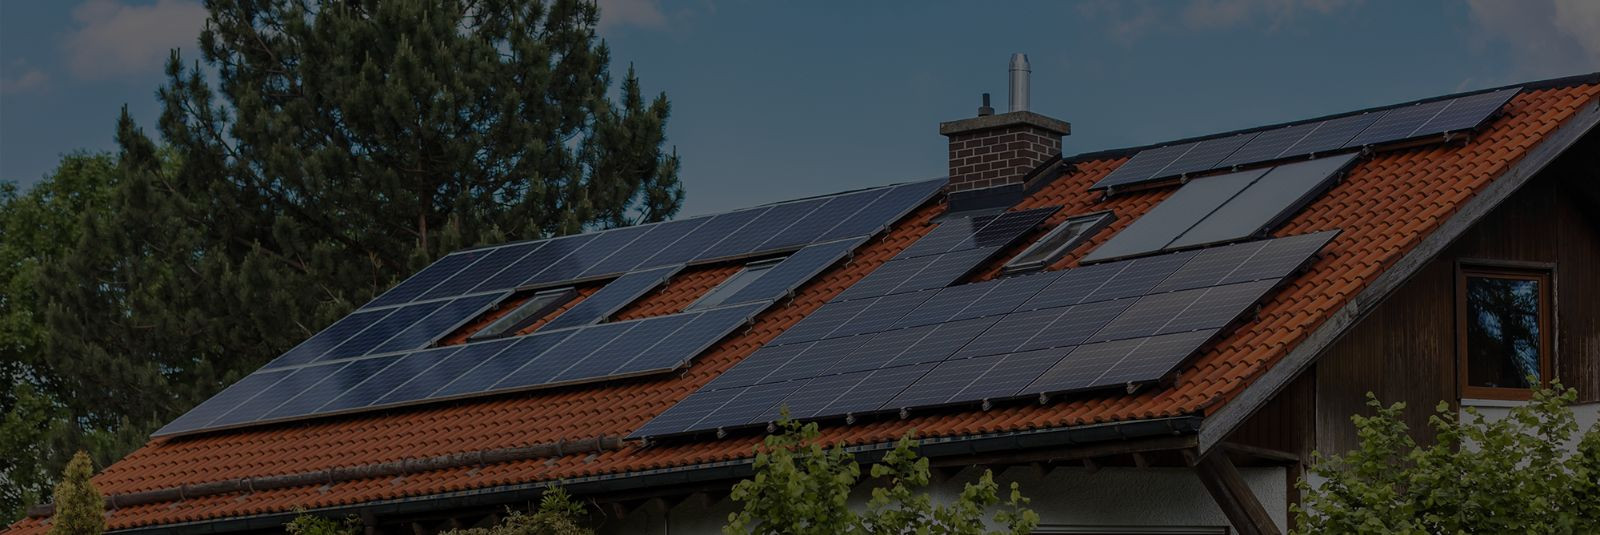 Kas oled mõelnud päikeseenergia võimalustele oma kodus? ProEnergy, Soemaja OÜ uusim haru, viib sind sammu võrra lähemale puhtale ja säästlikule energiale, pakku